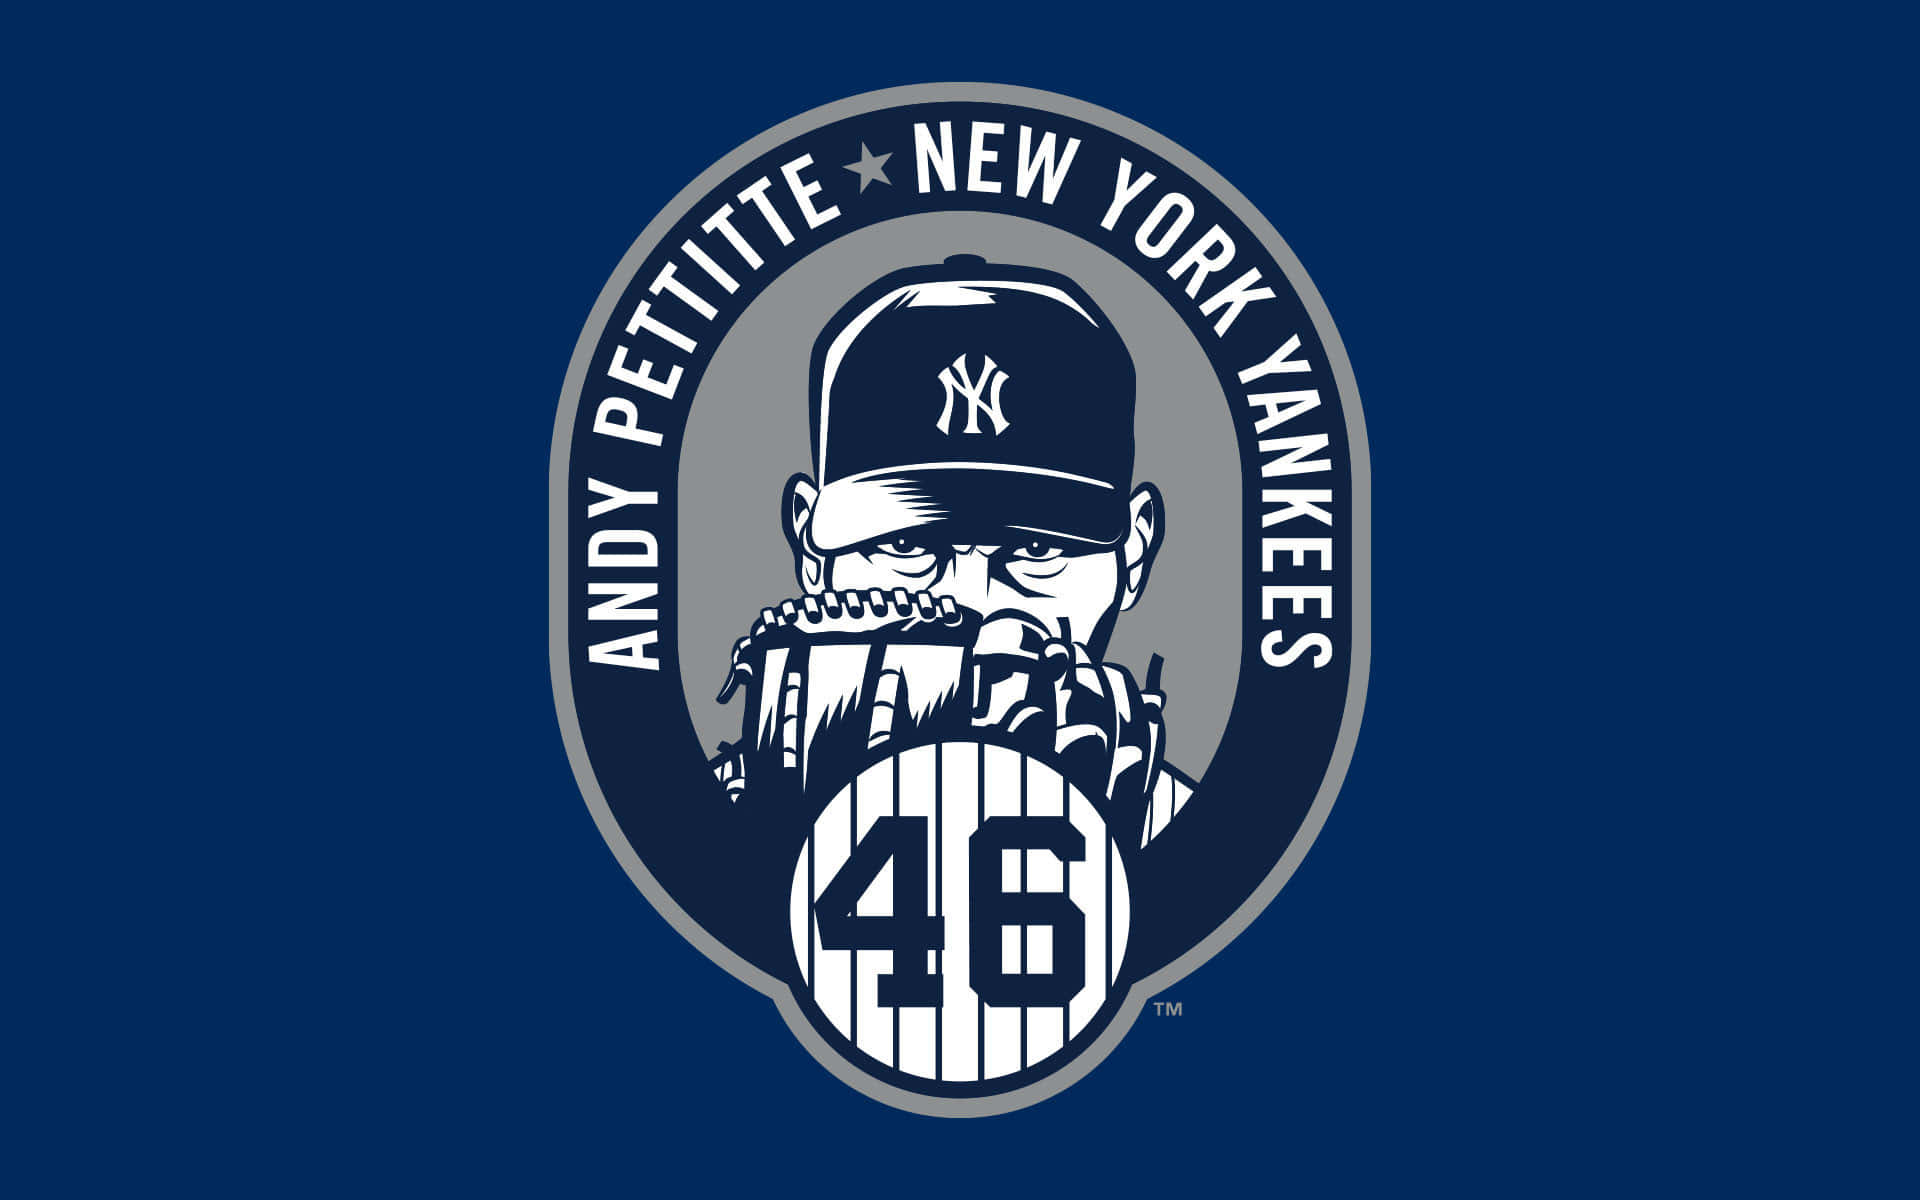 Andypettitte New York Yankees Wallpaper Für Das Iphone Wallpaper